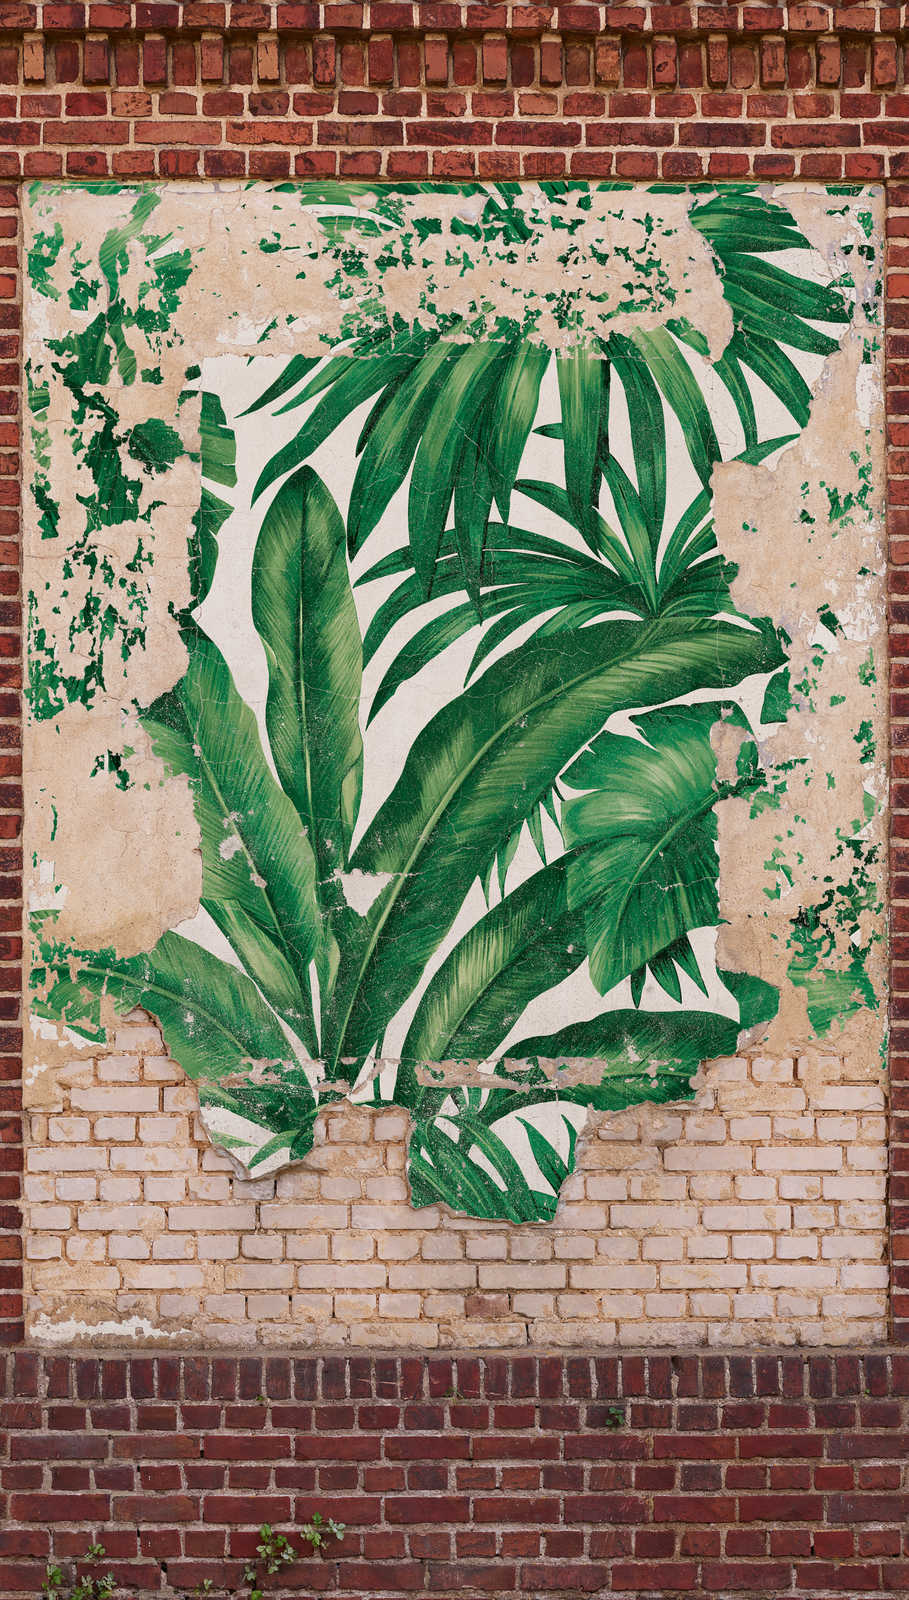             Papel pintado de hojas de palmera sobre pared con aspecto de ladrillo - Marrón, Beige, Rojo
        